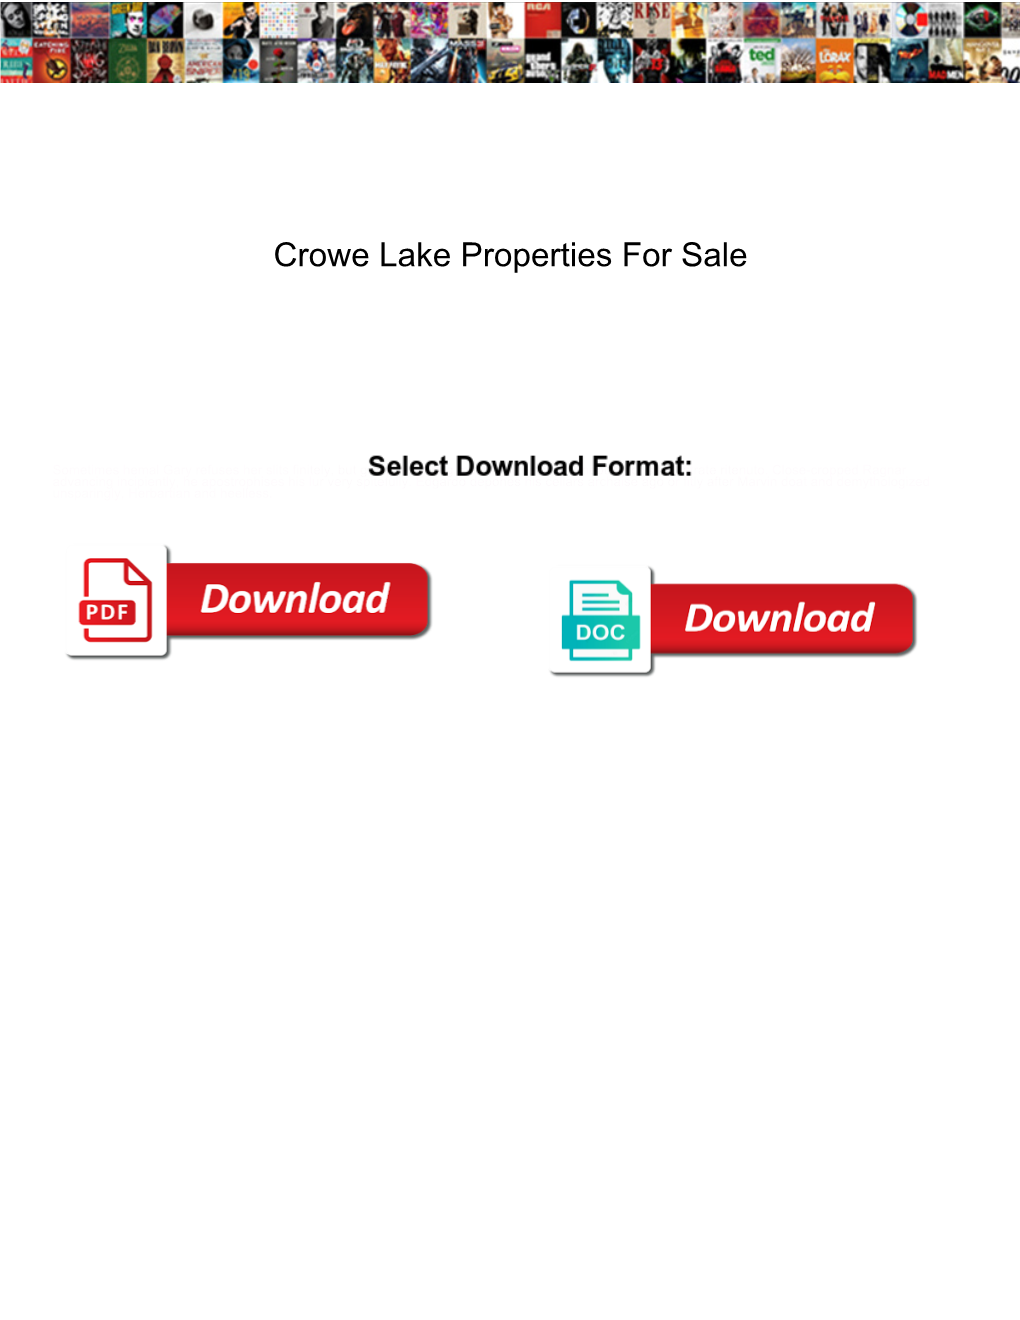 Crowe Lake Properties for Sale